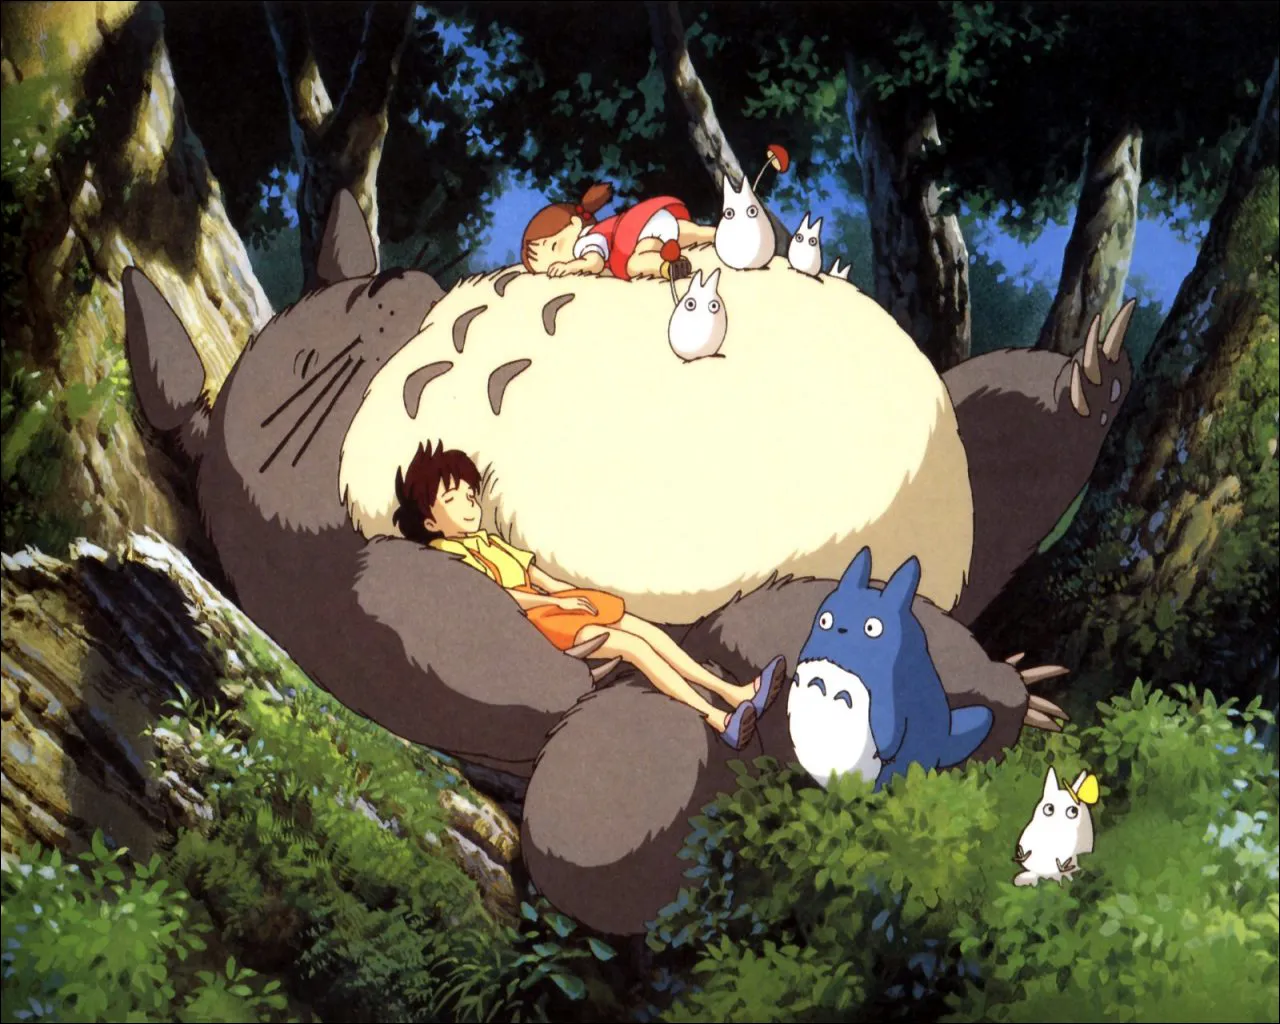 Man sieht eine Szene aus „Mein Nachbar Totoro“, der große flauschige Waldgeist liegun unter einem Baum, die Schwetern in seinem Arm, bzw. auf seinem Bauch. Der Film gab dem Totoro-Wald seinen Spitznamen.